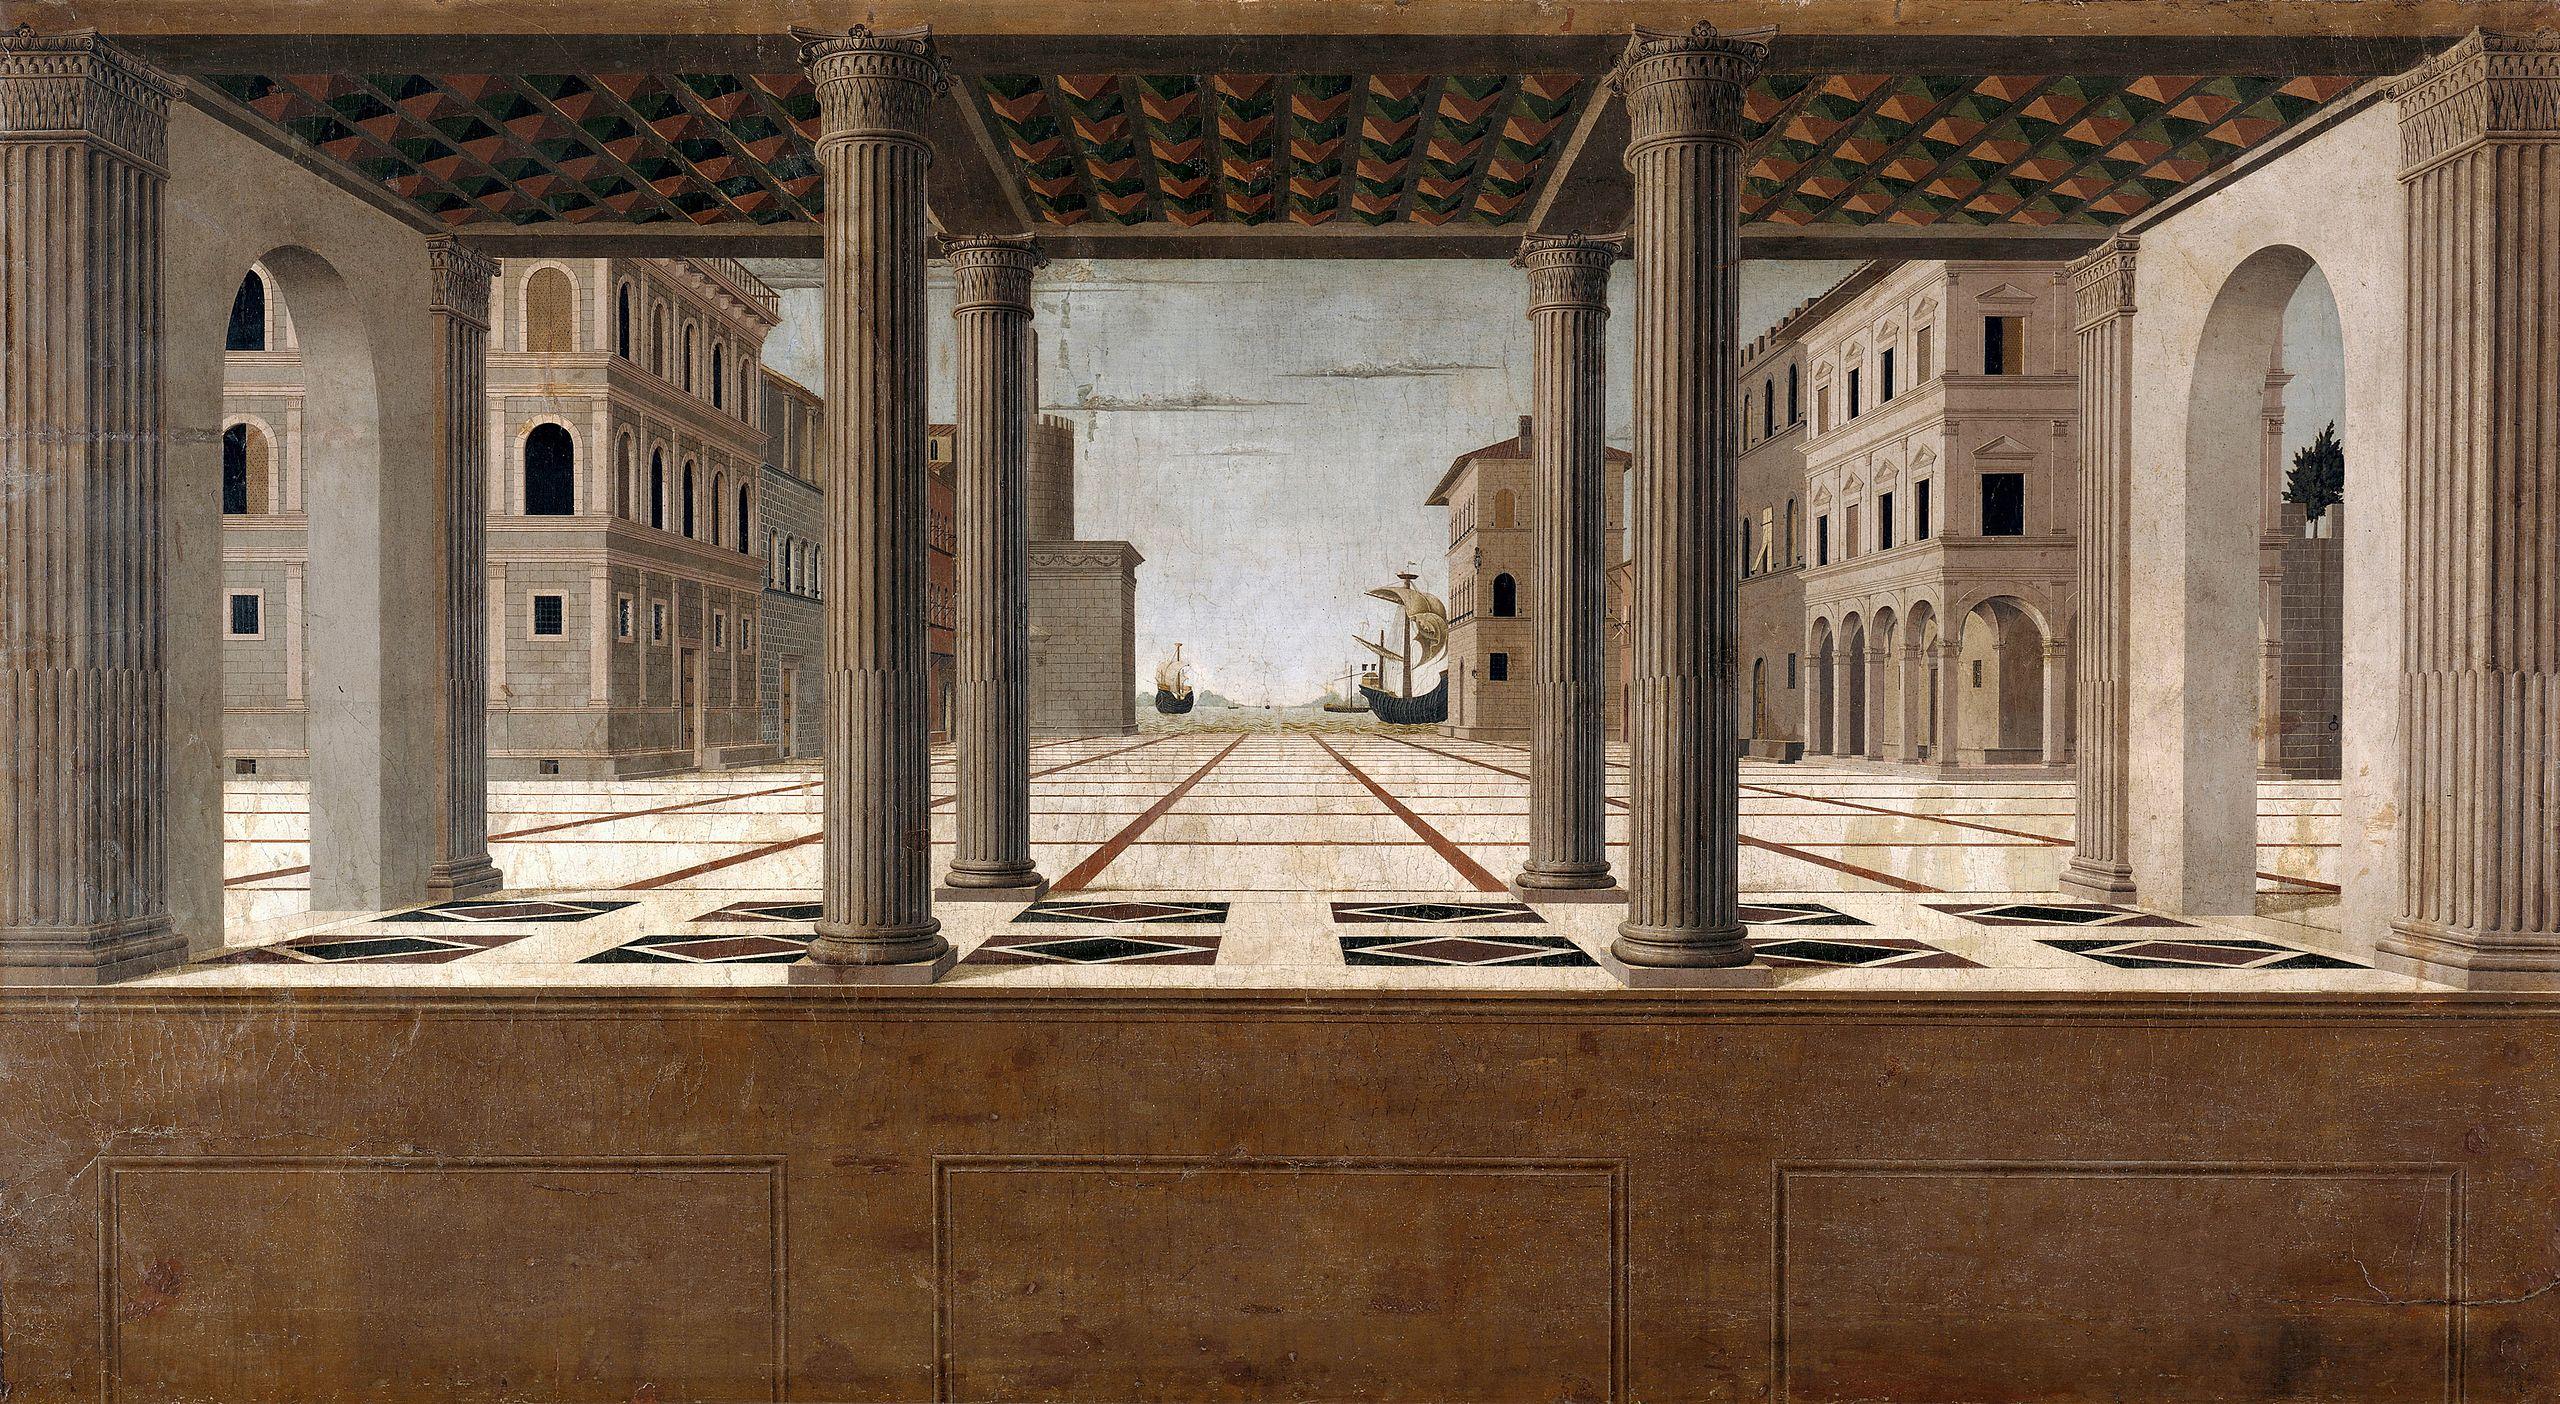 Francesco di Giorgio Martini (αποδιδόμενο έργο), Veduta / Città ideale, Gemäldegalerie, Staatliche Museen zu Berlin.